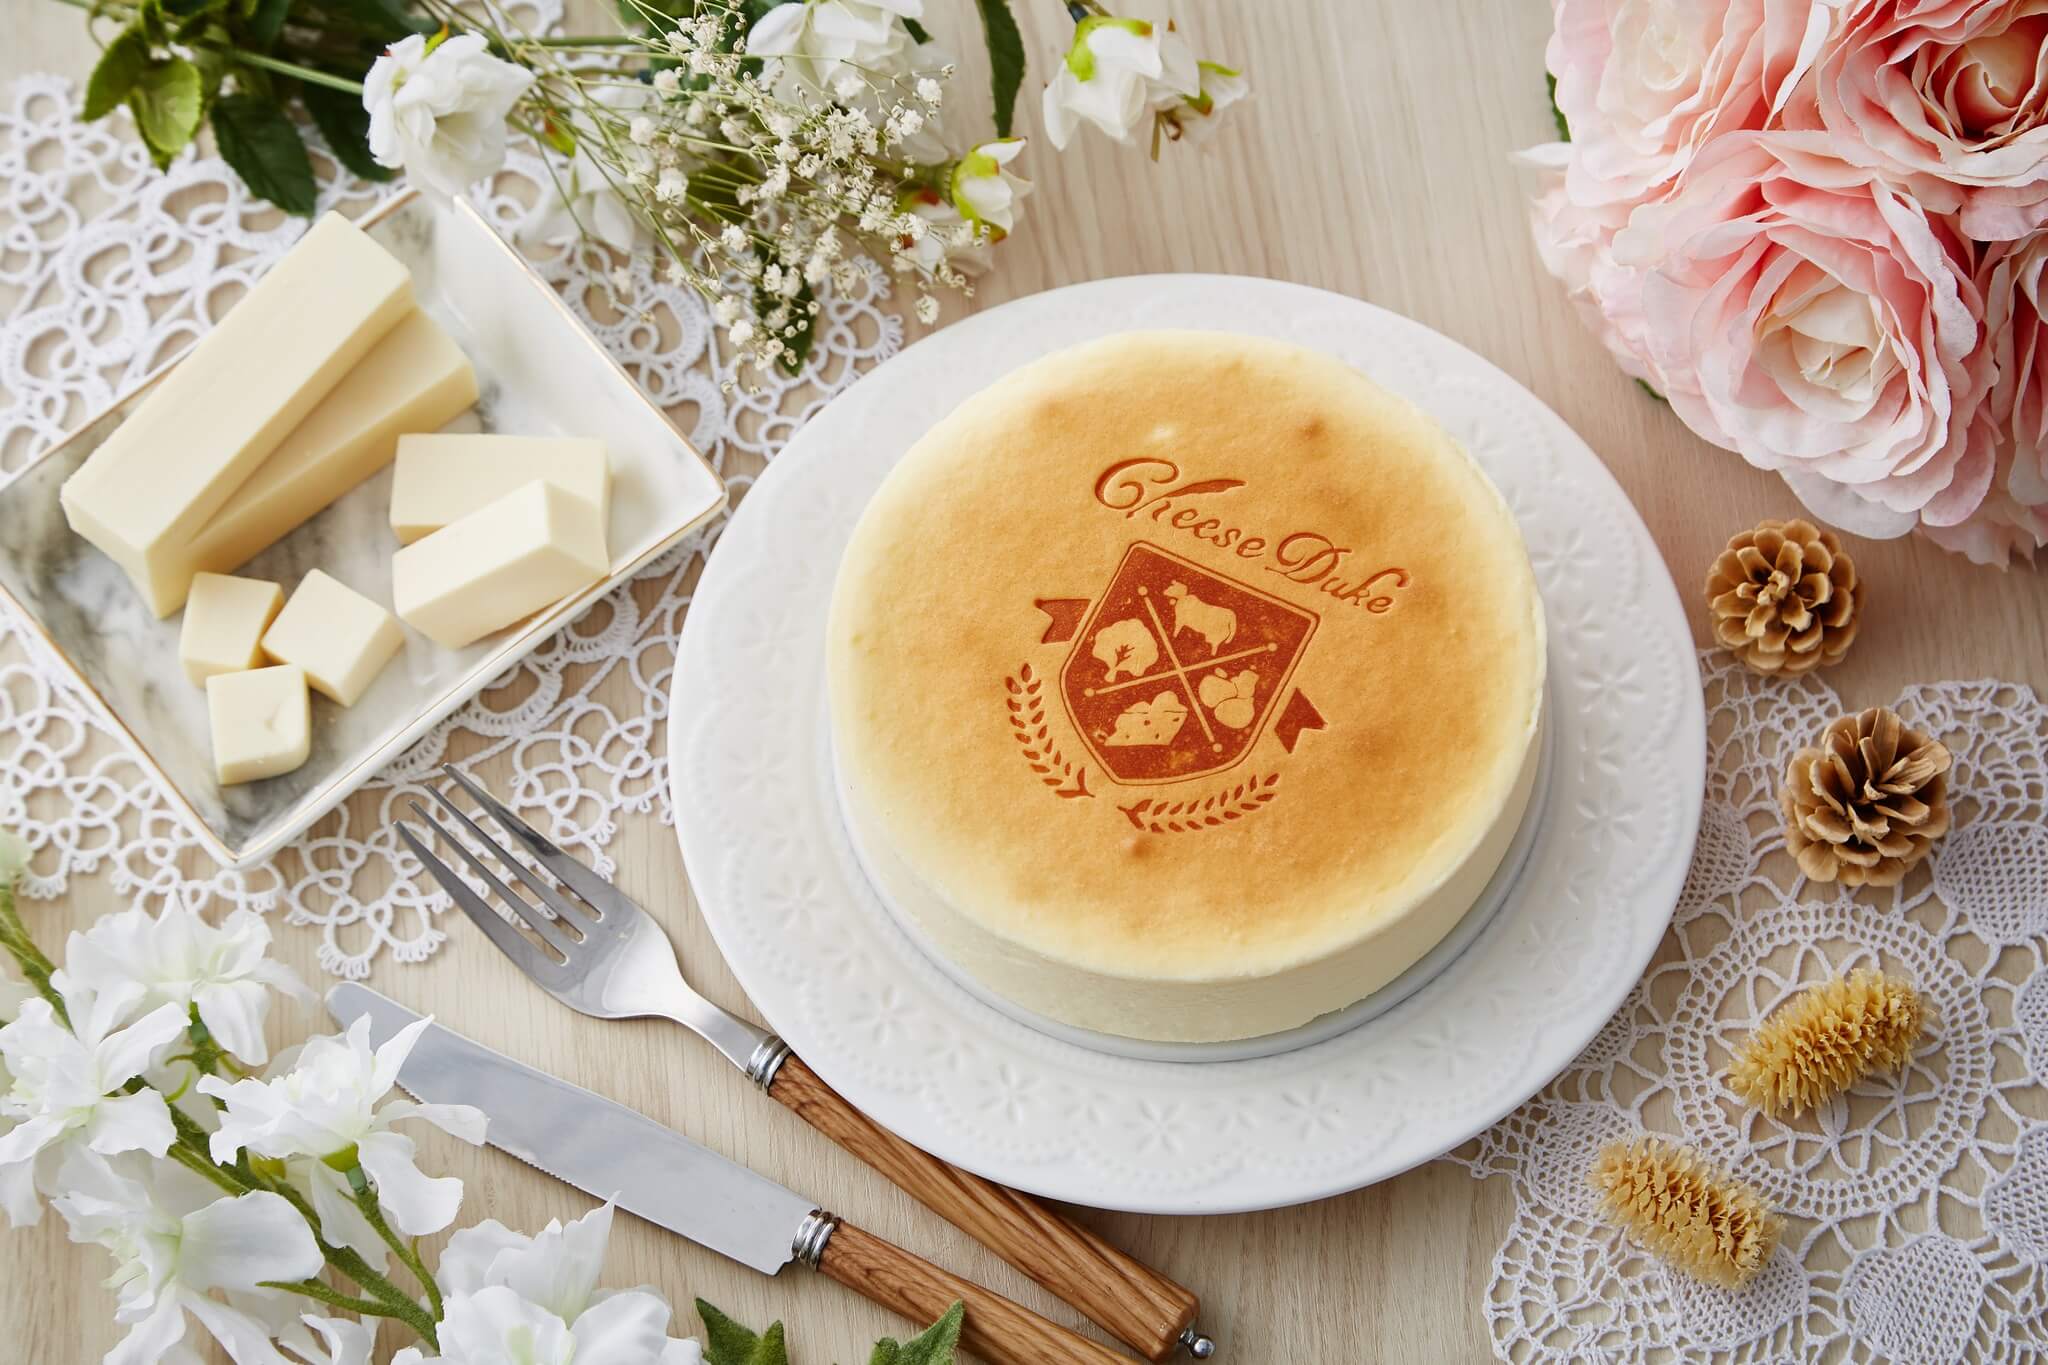 《起士公爵》乳酪蛋糕獲得無數獎項的肯定，是品牌十分熱賣的商品